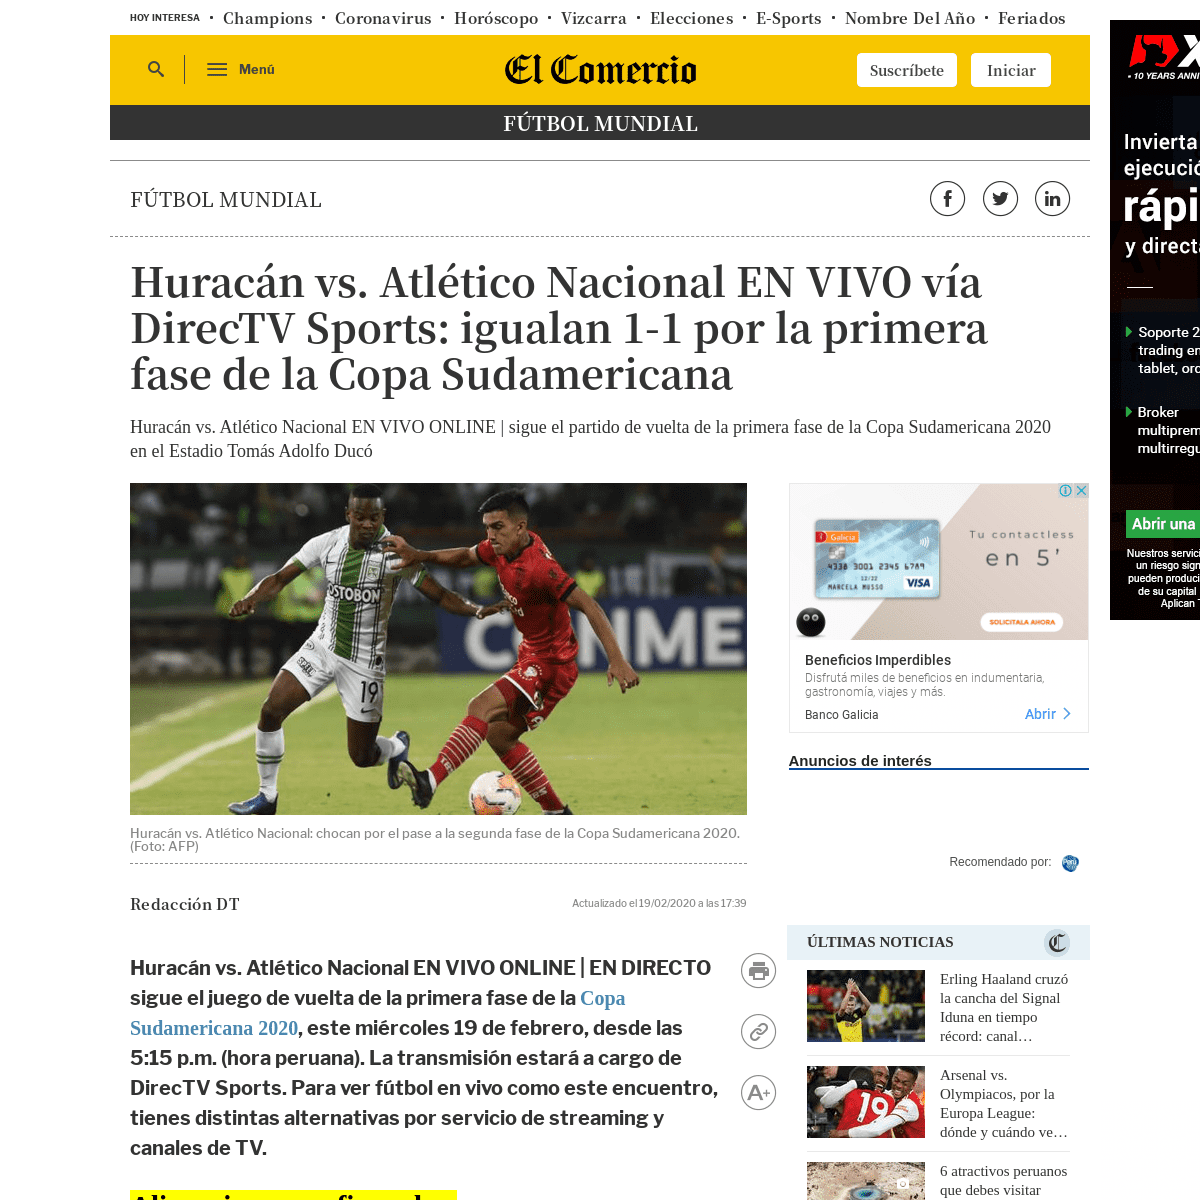 A complete backup of elcomercio.pe/deporte-total/futbol-mundial/ver-en-vivo-huracan-vs-atletico-nacional-horarios-senal-de-tv-y-